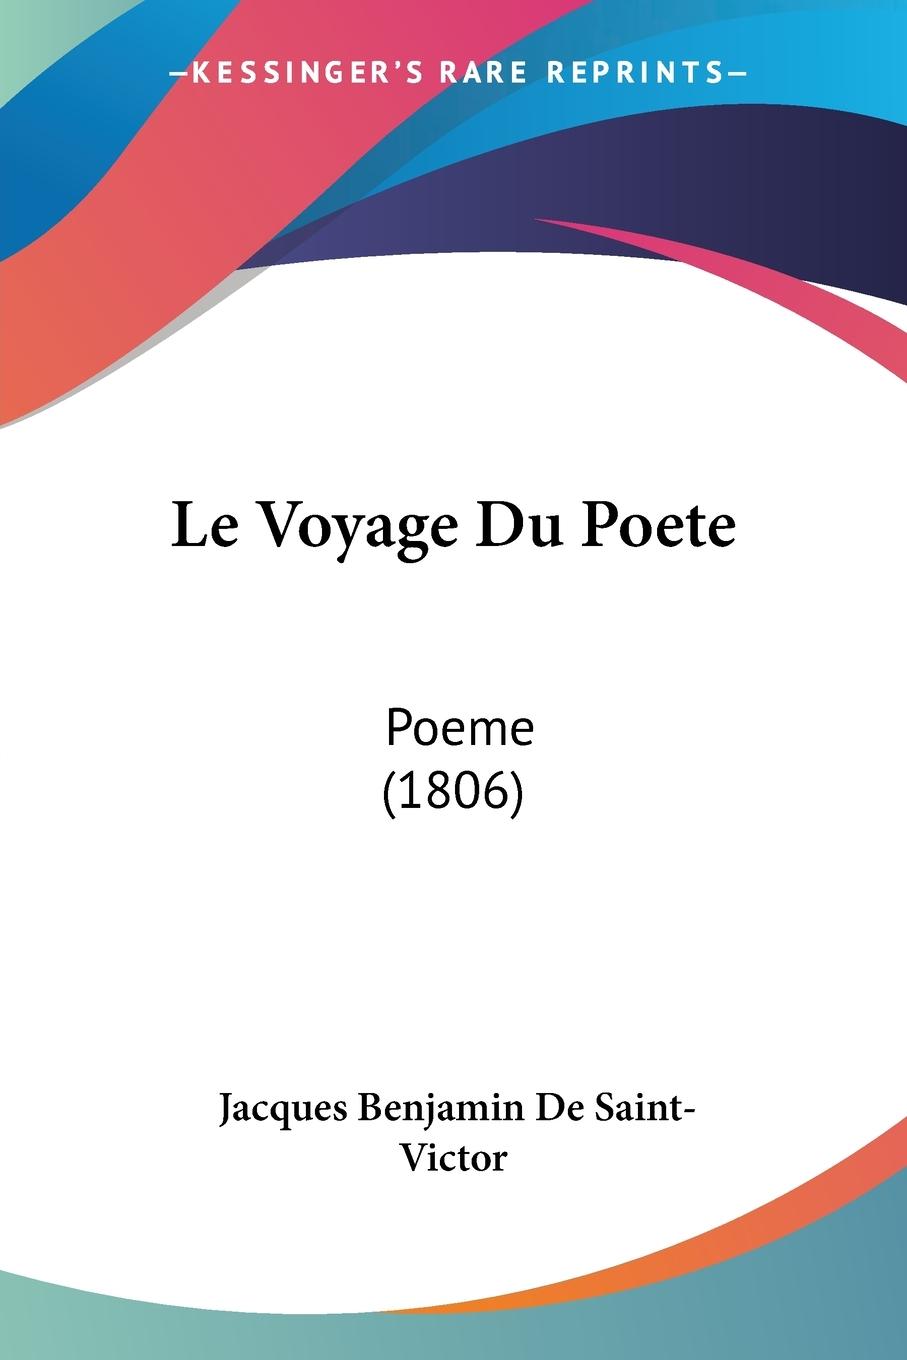 Le Voyage Du Poete - De Saint-Victor, Jacques Benjamin